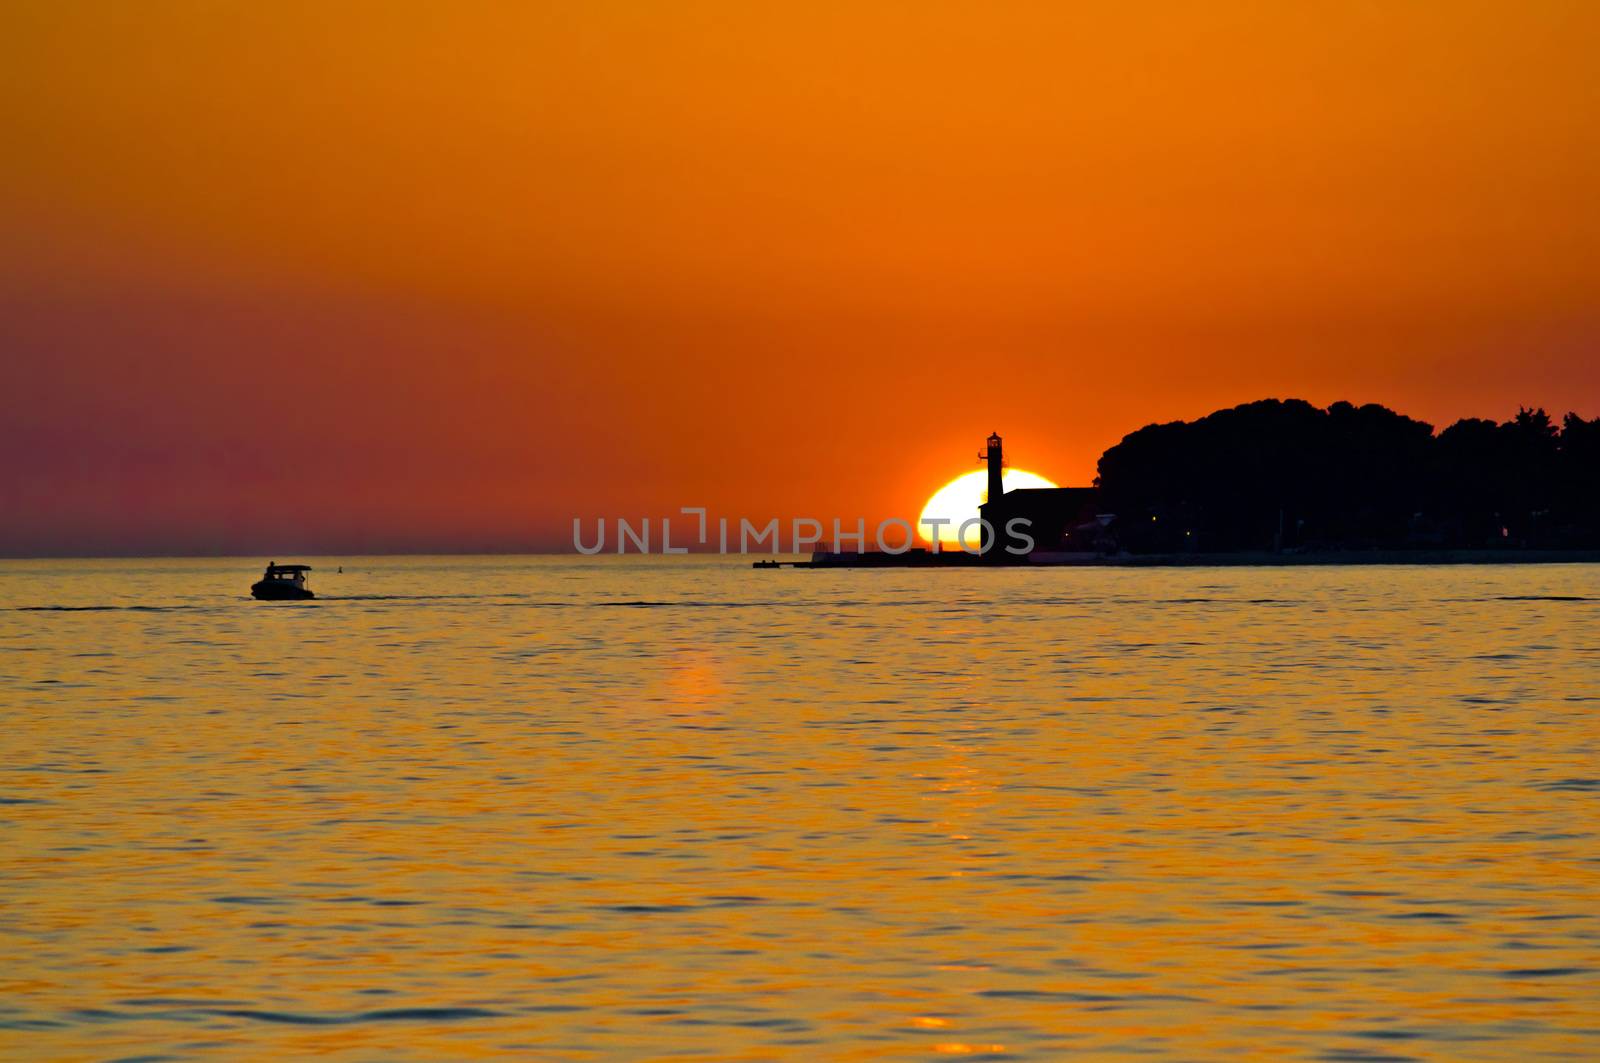 Lighthouse in Zadar epic sunset by xbrchx